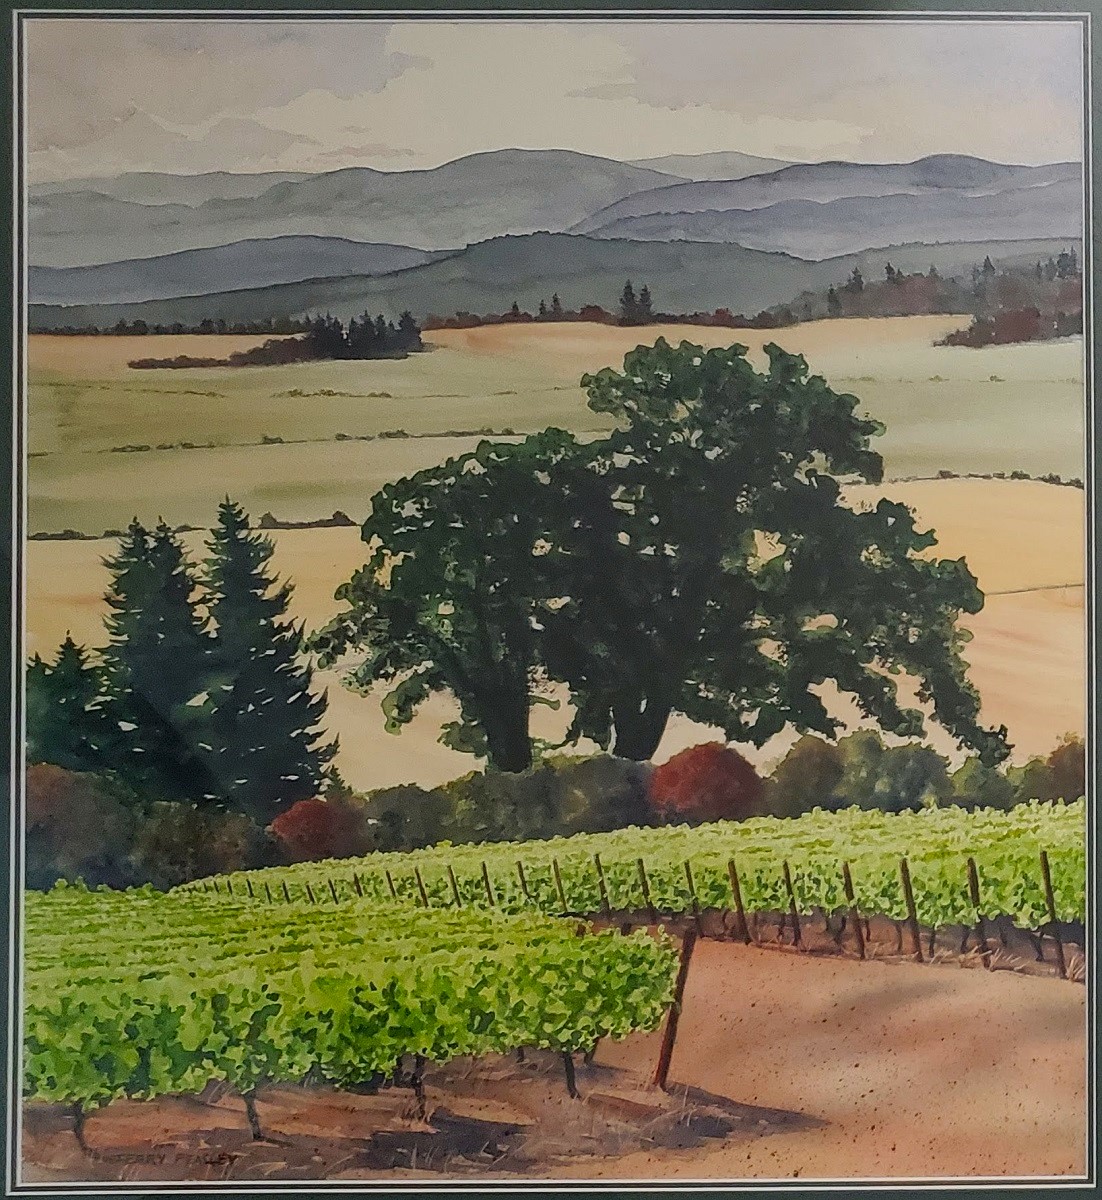 Oak in the Vineyard by Terry Peasley